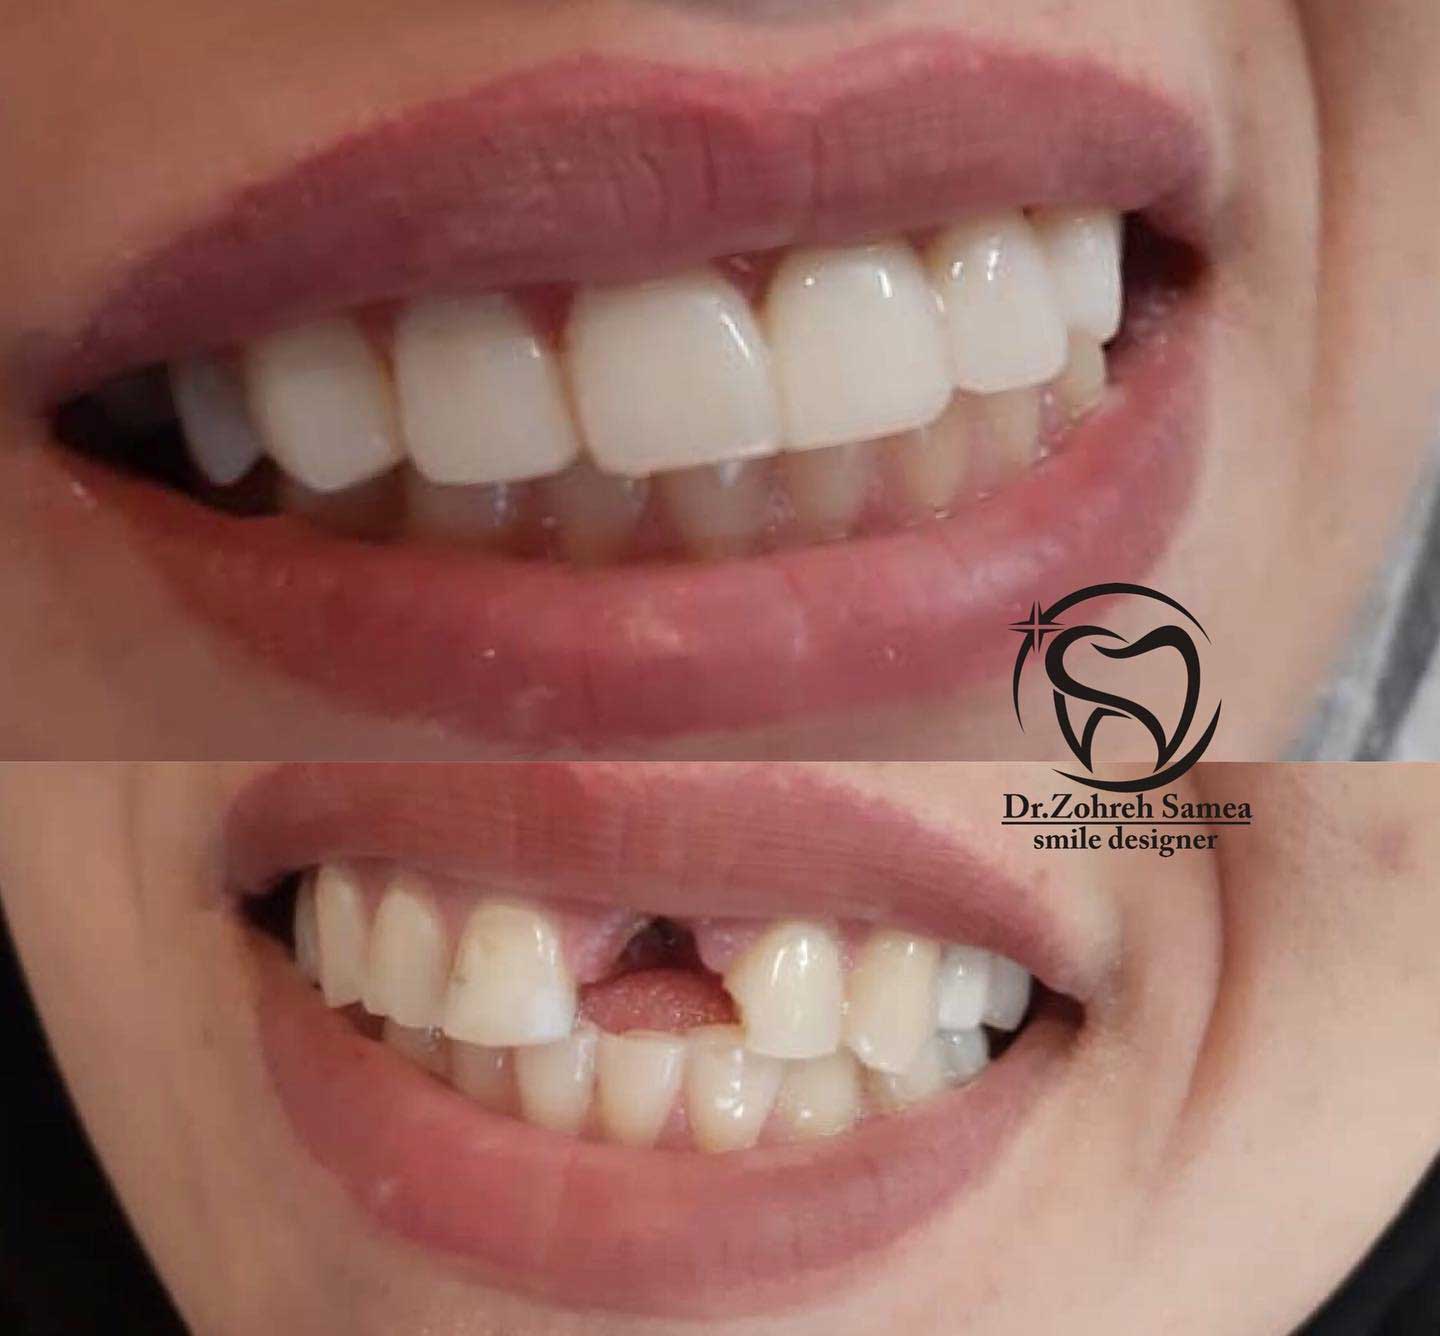 نمونه کار زیبایی دکتر زهره سامع دندانپزشک زیبایی در اصفهان